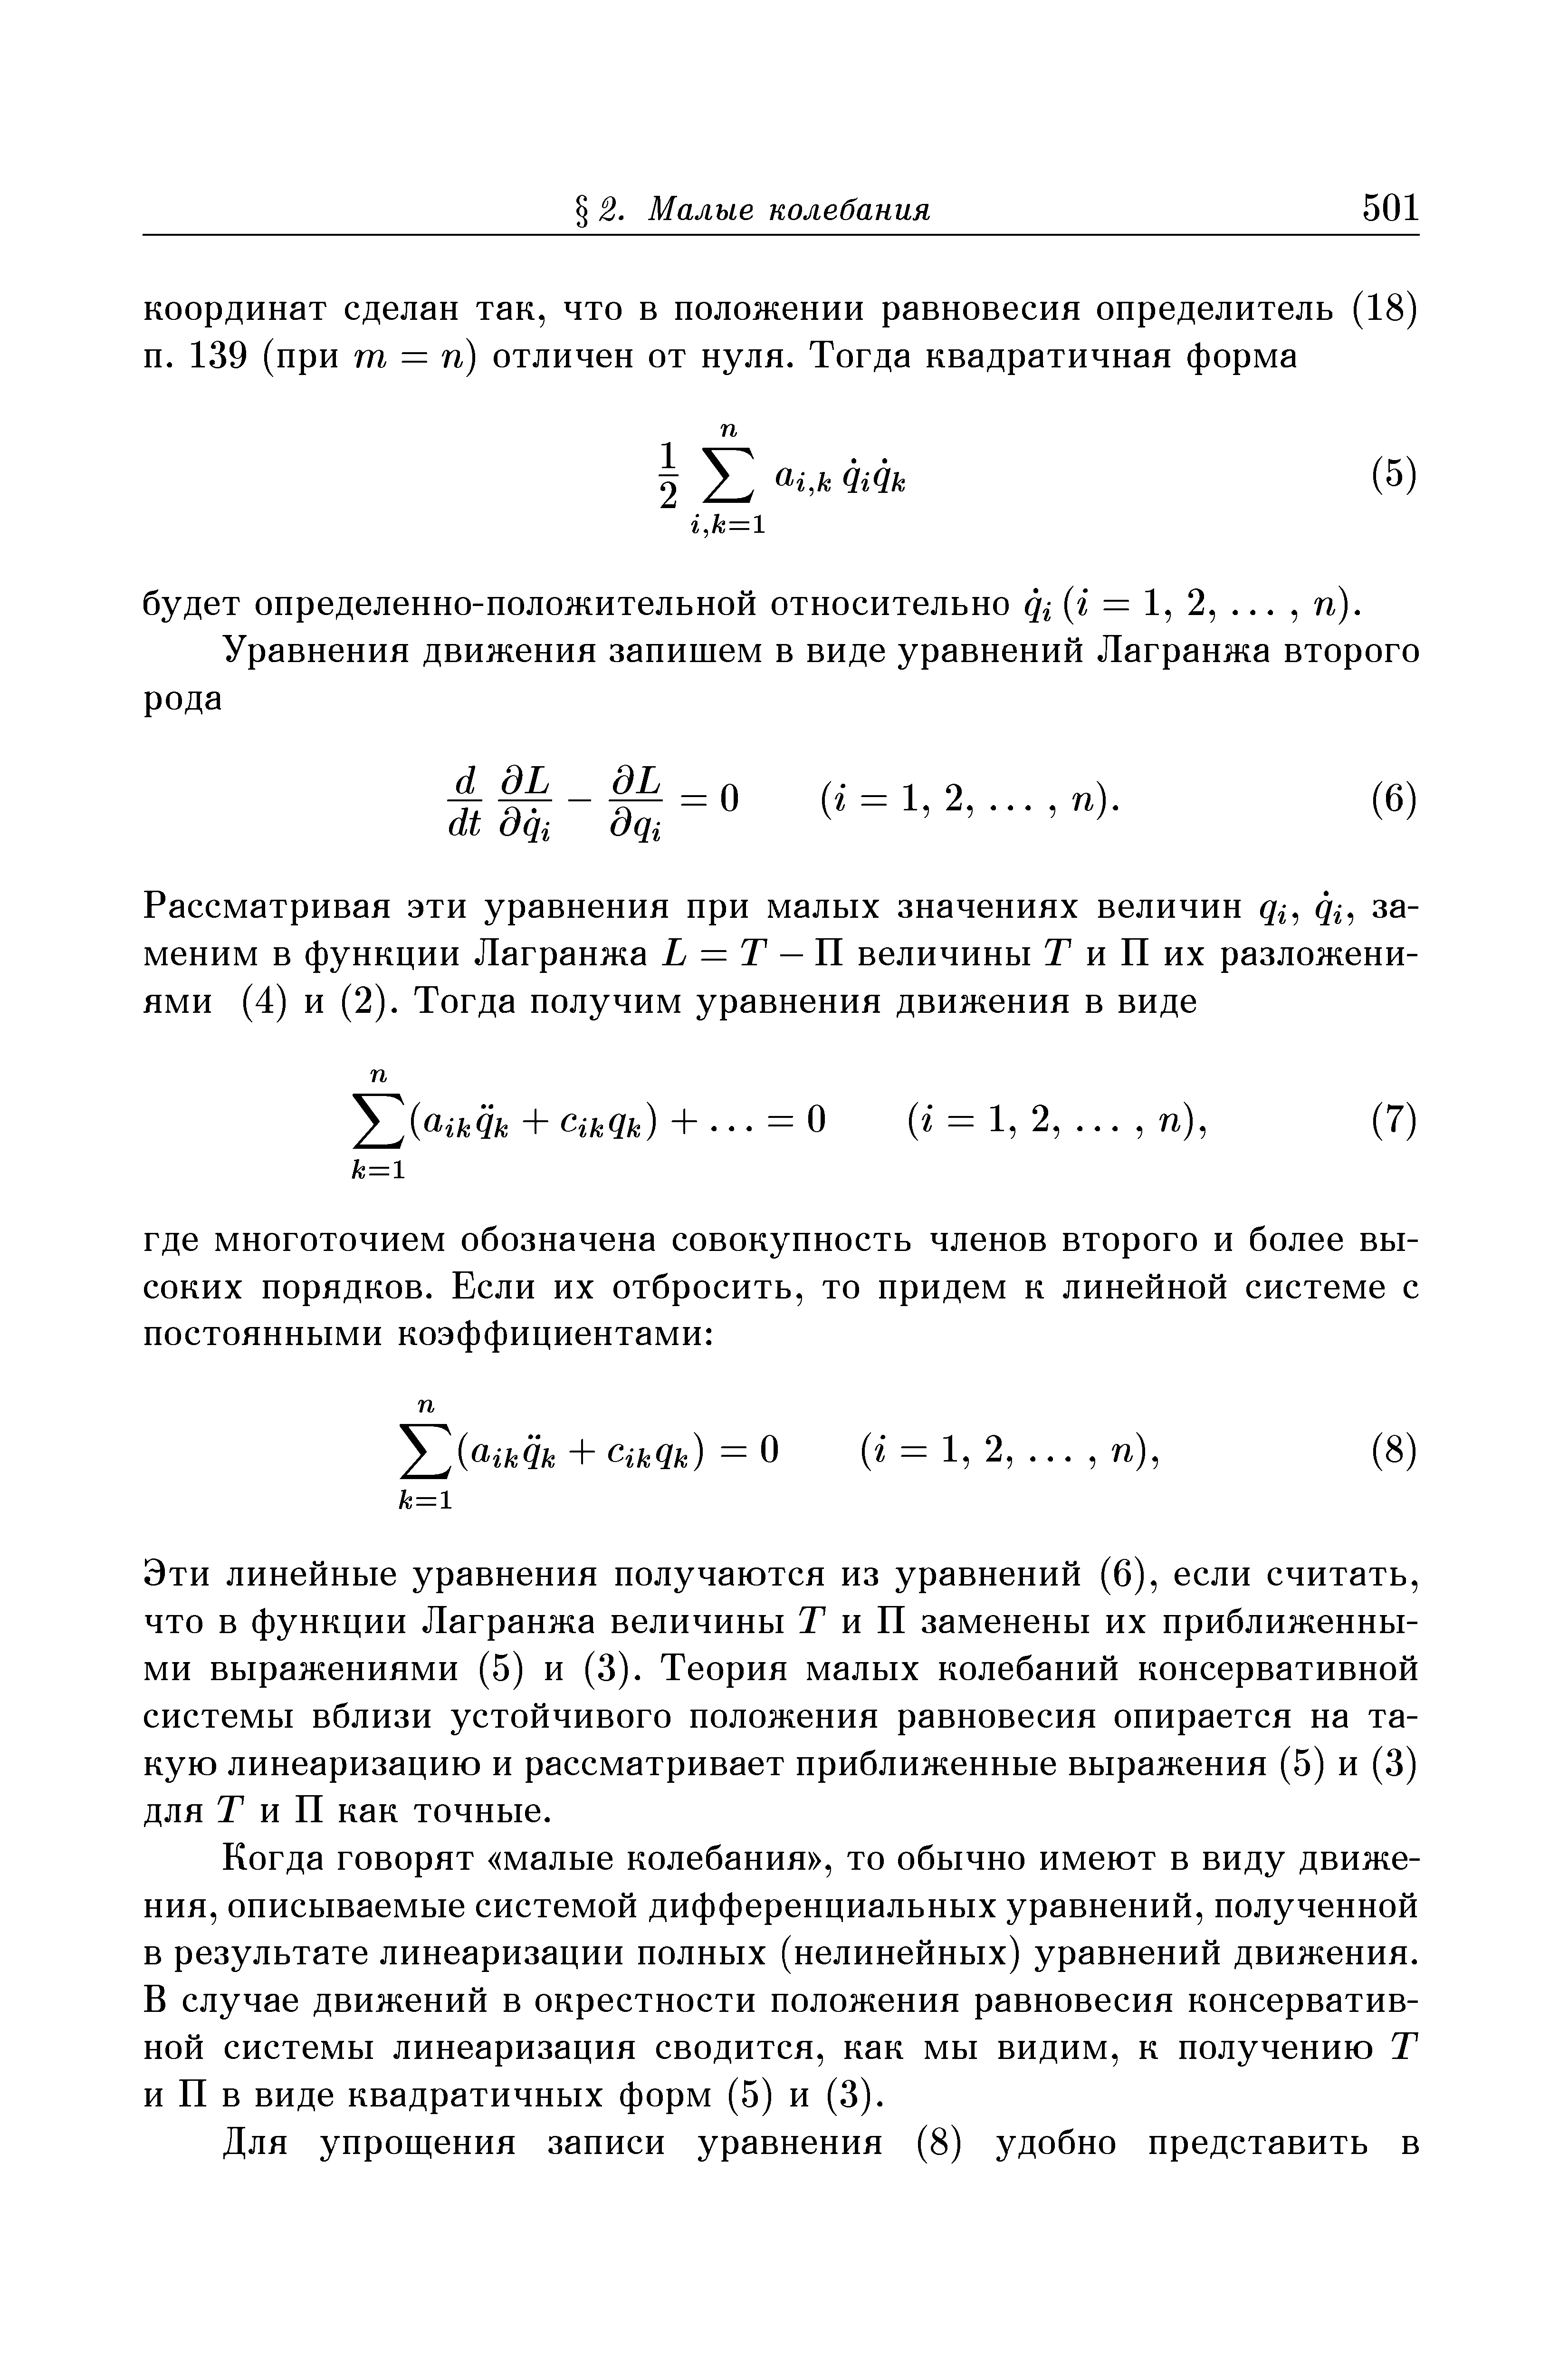 Эти линейные уравнения получаются из уравнений (6), если считать, что в функции Лагранжа величины Т и П заменены их приближенными выражениями (5) и (3). Теория малых колебаний консервативной системы вблизи устойчивого положения равновесия опирается на такую линеаризацию и рассматривает приближенные выражения (5) и (3) для Т и П как точные.
